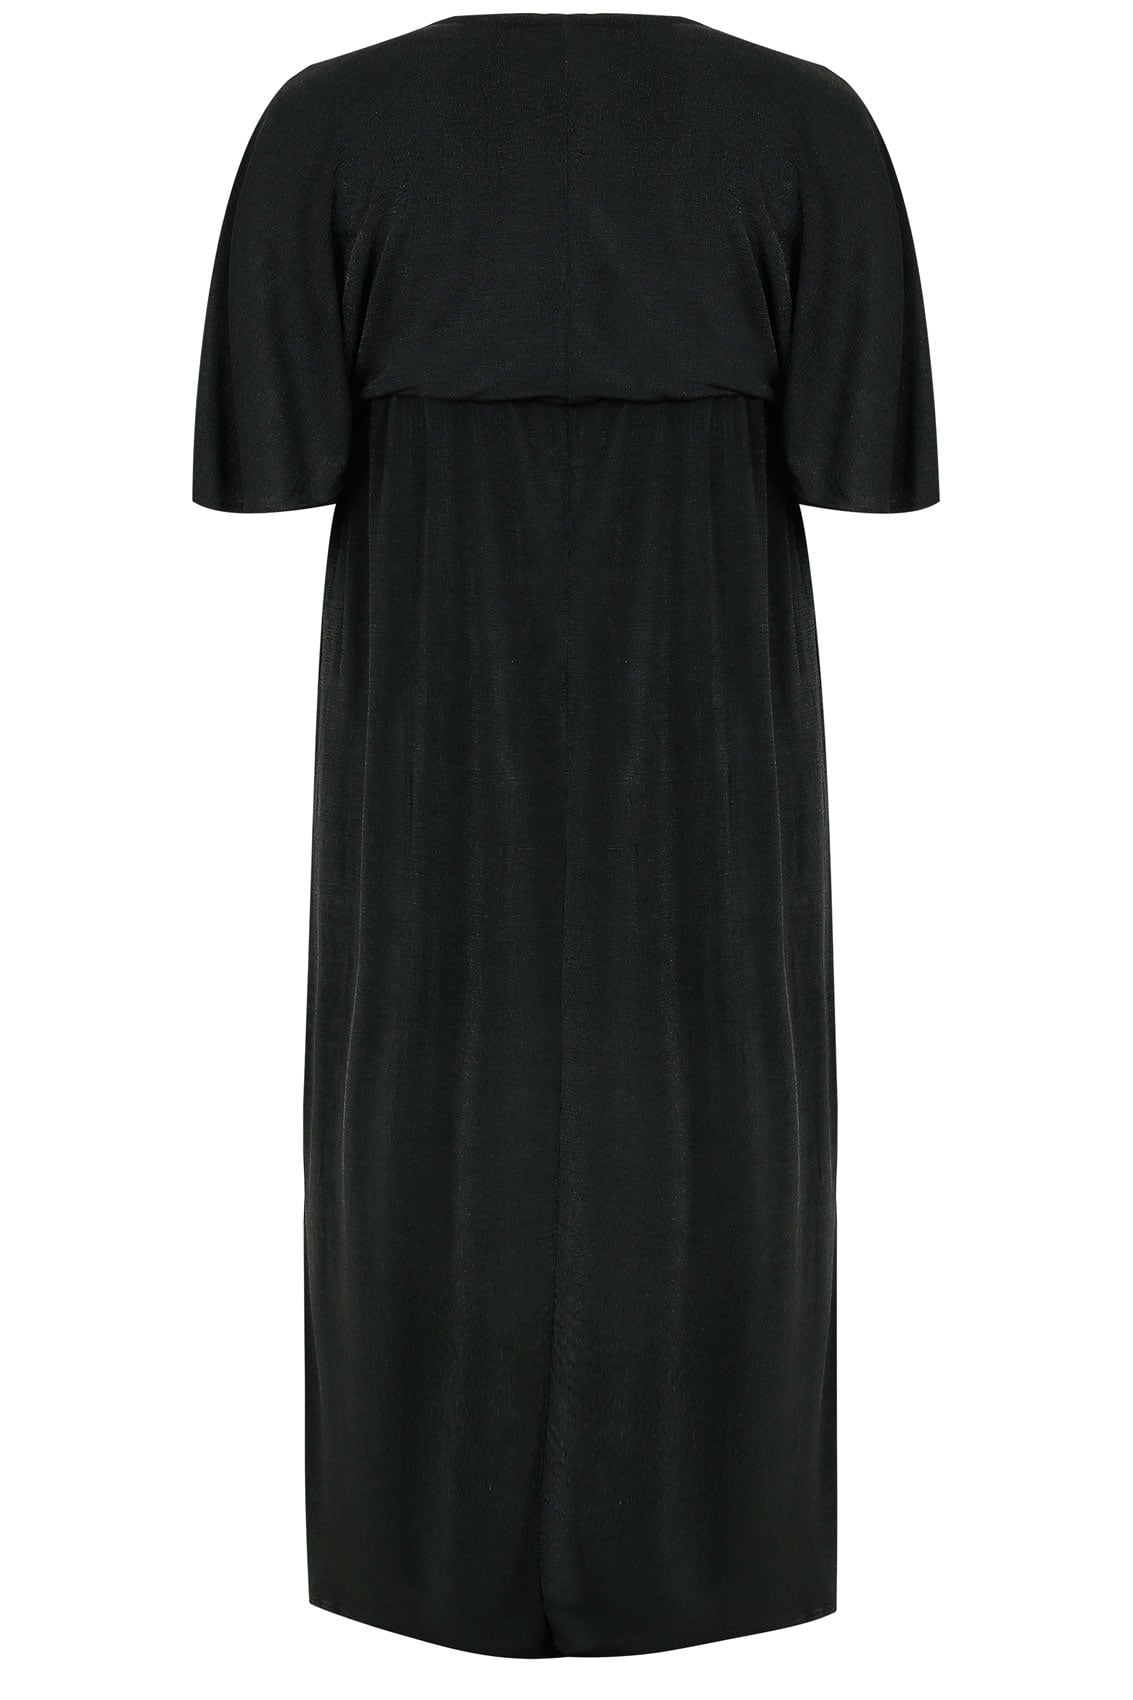 Black Sheen Maxi Dress With Kimono Sleeves, Plus size 16 to 36